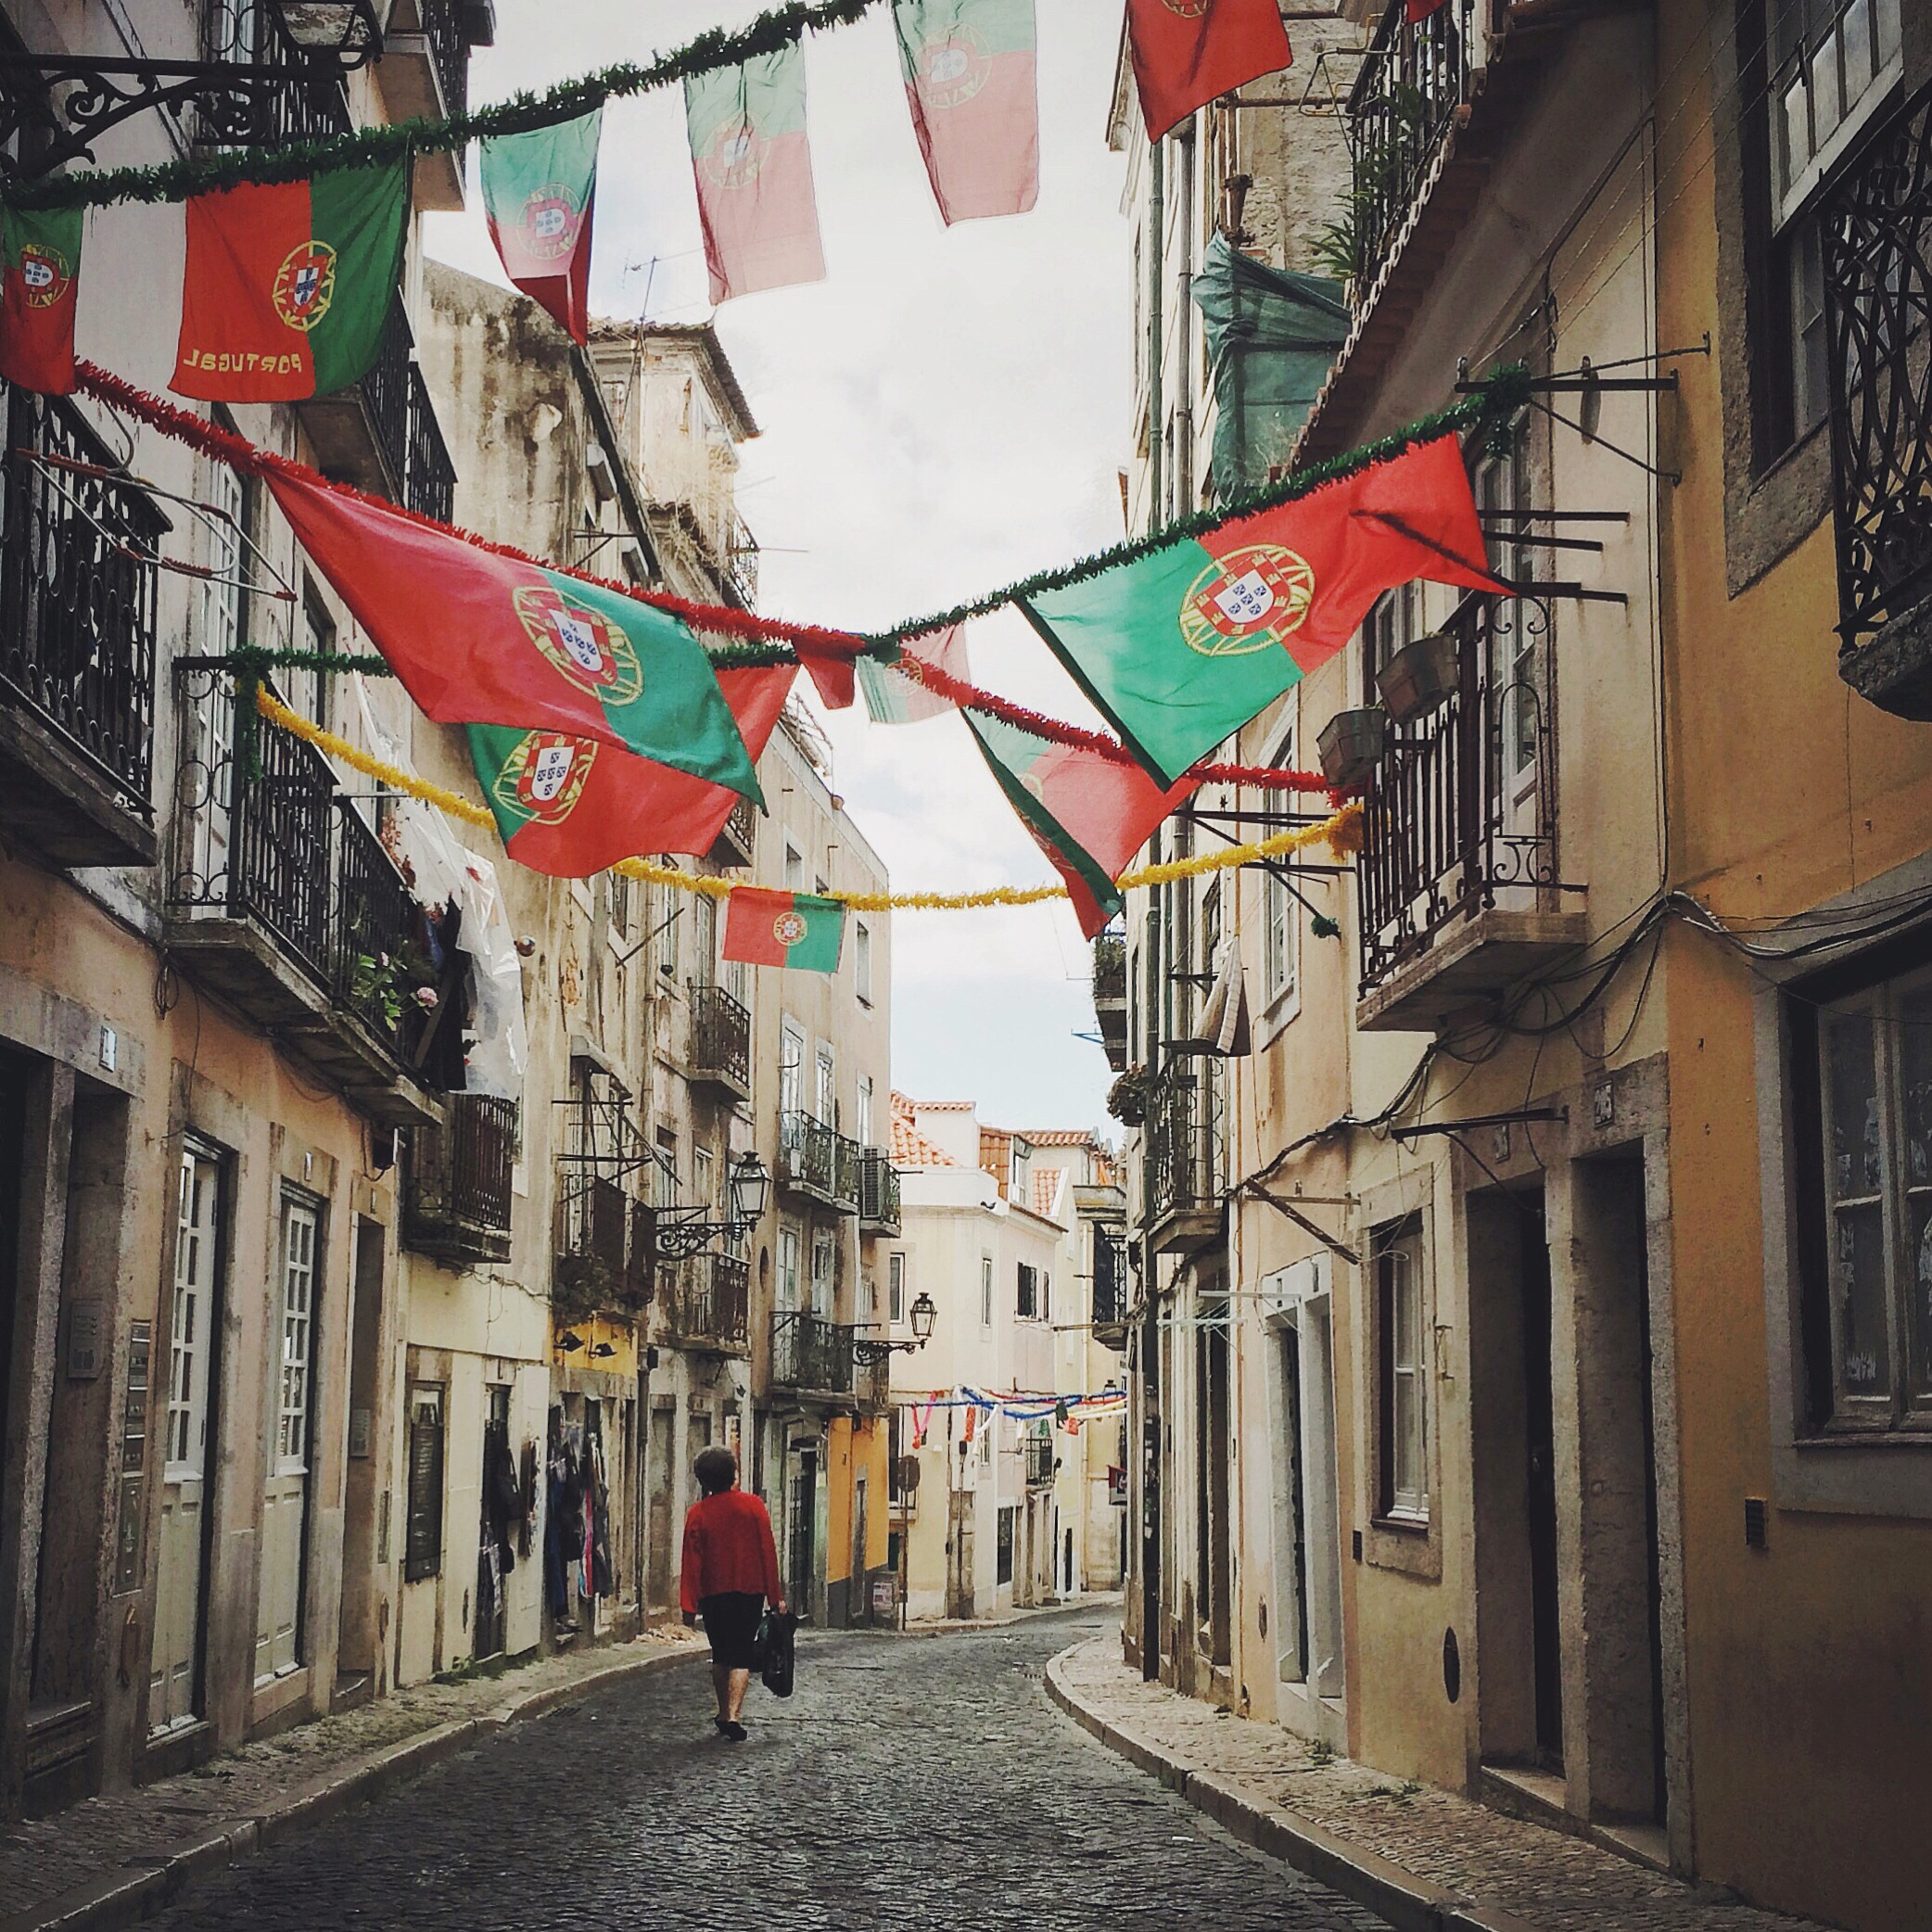 Culinária portuguesa: a imigração dos portugueses para o Brasil